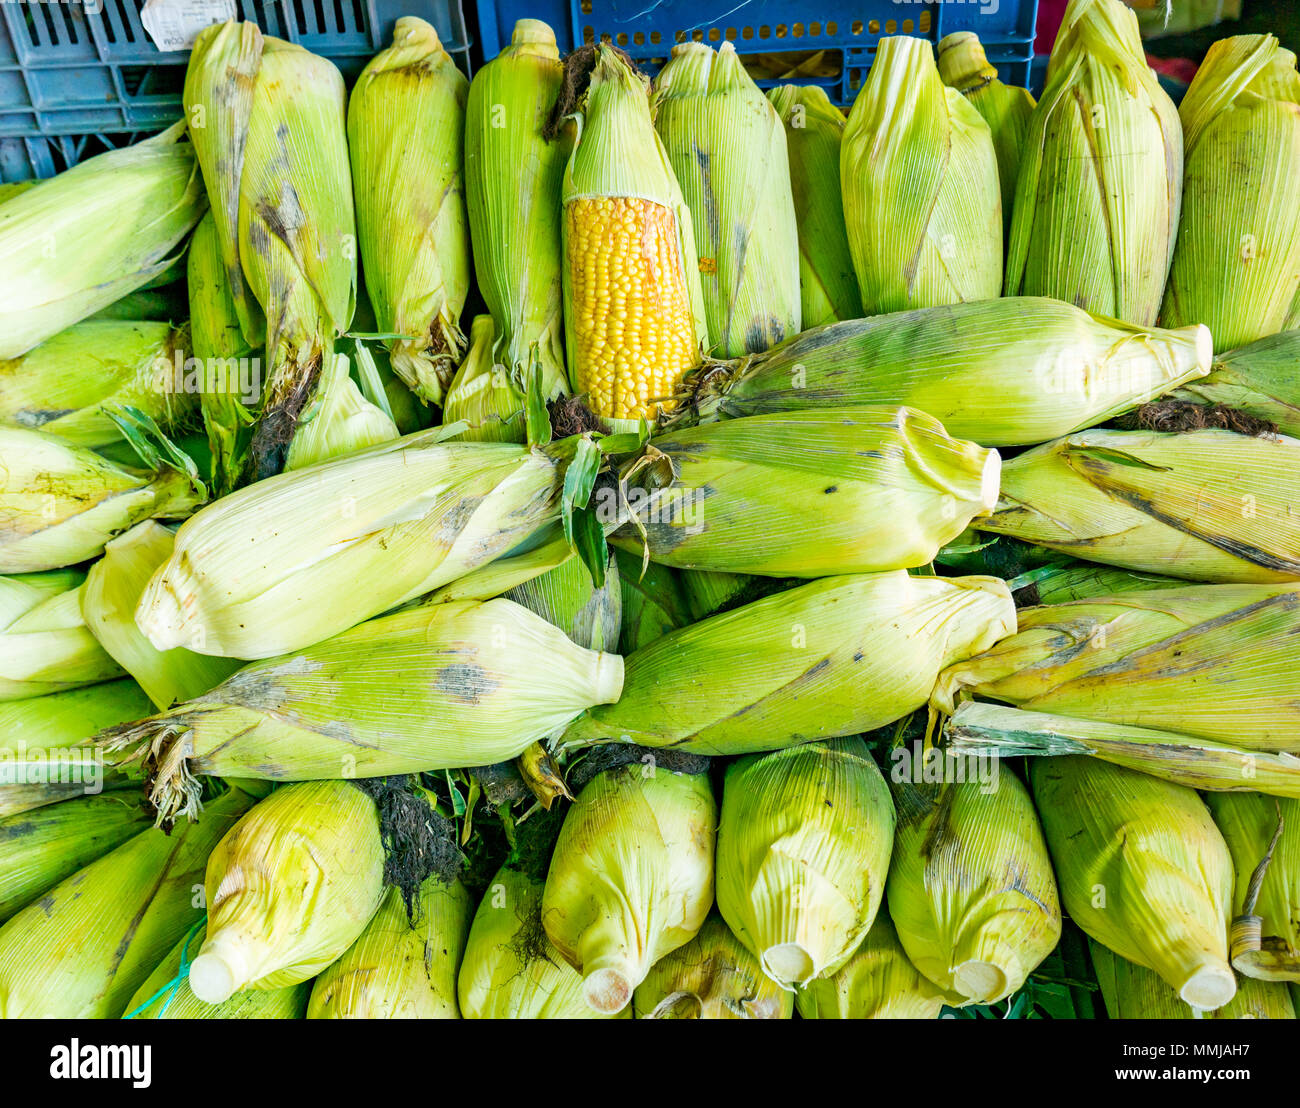 Visualizzazione di sulla pannocchia di mais, Patronata mercato di frutta e verdura, Santiago del Cile Foto Stock